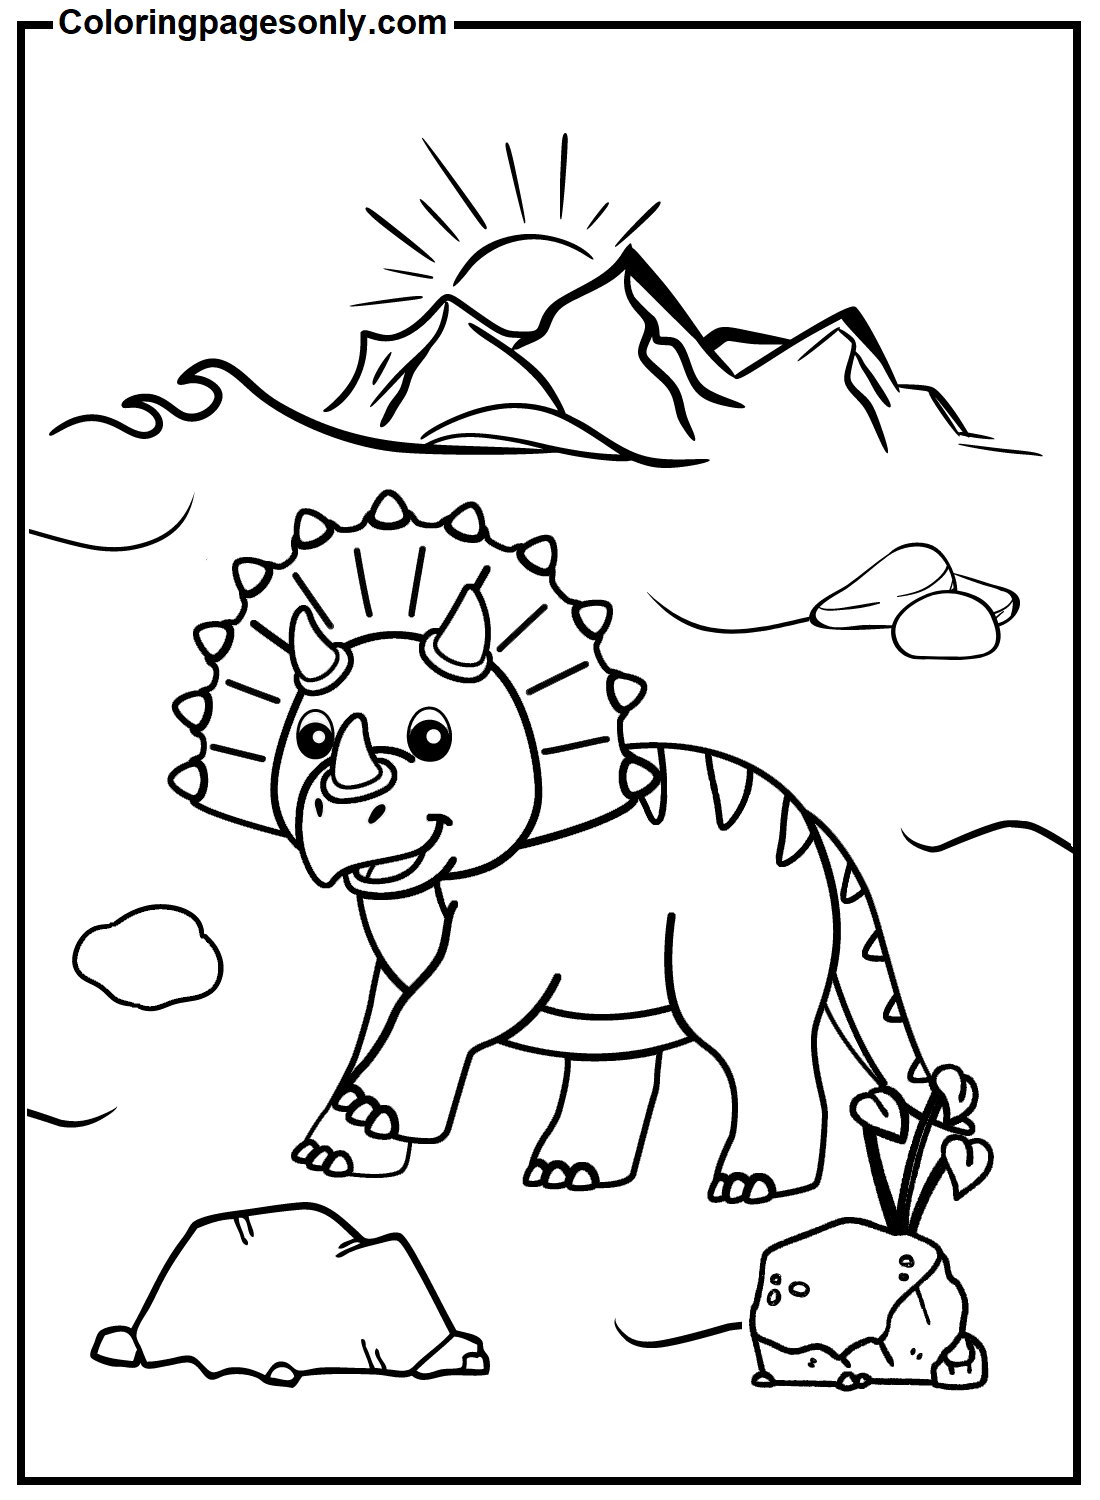 Трицератопс для детей от Triceratops